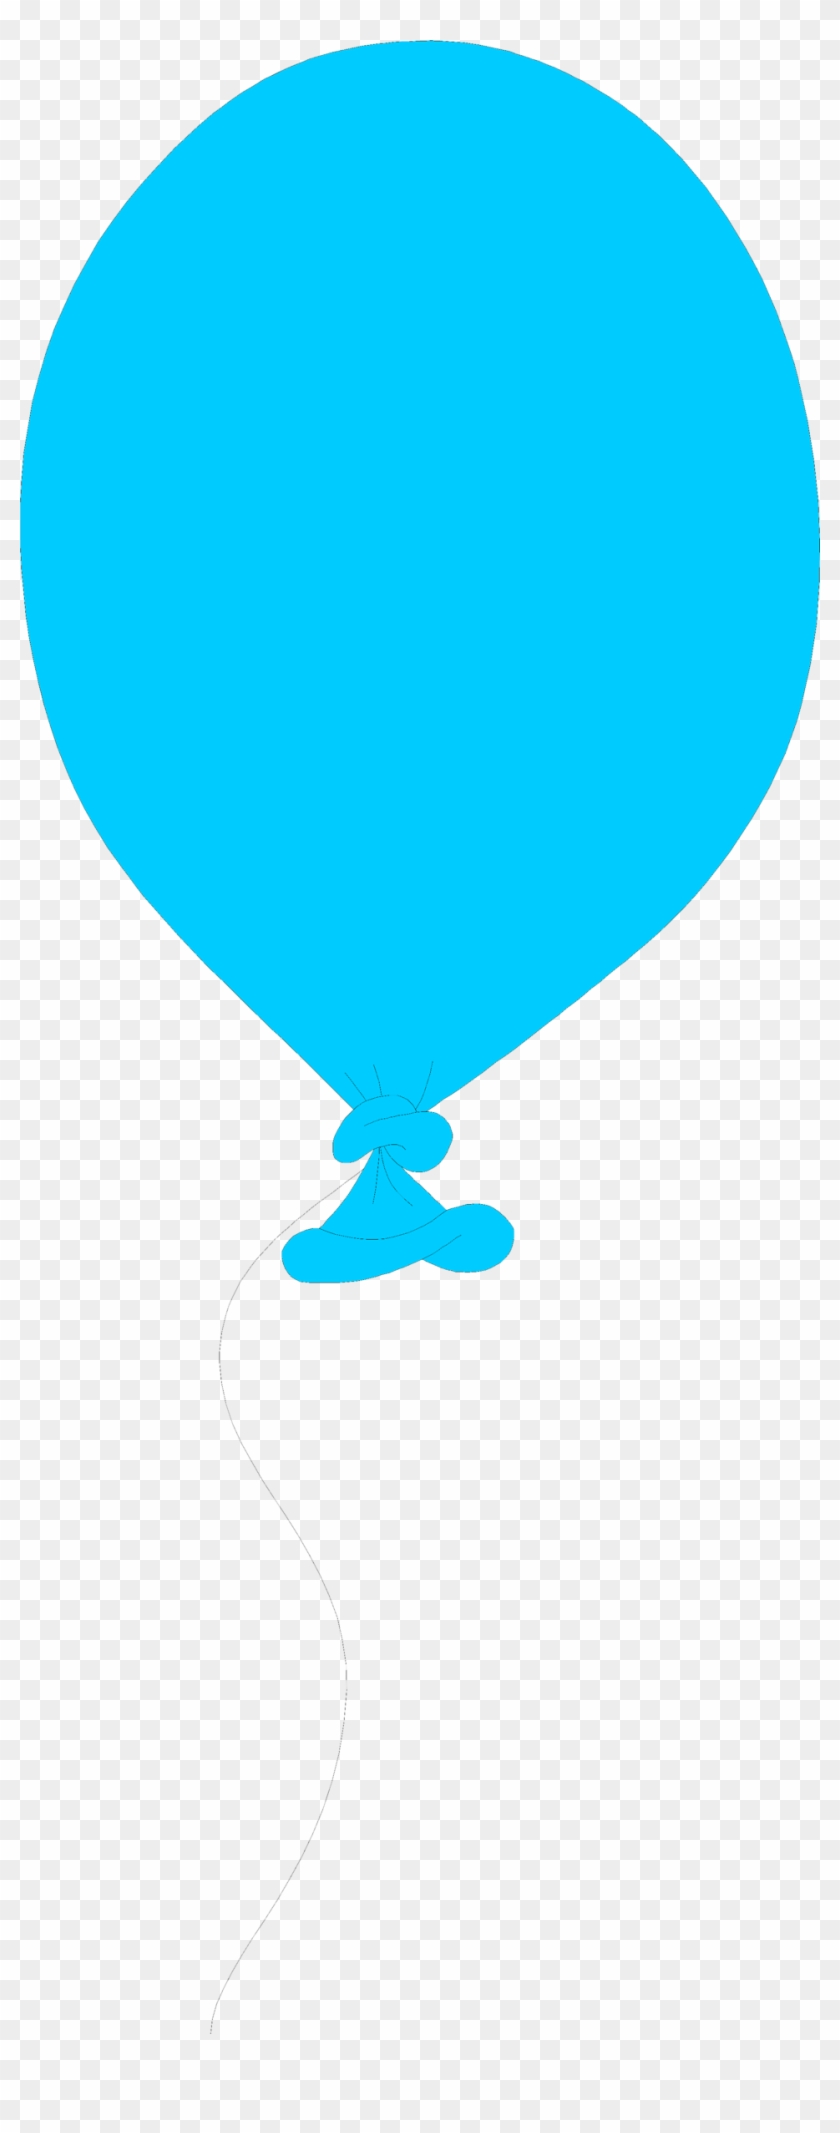 Blue Balloon Clipart - Balloon Illustration #1691170